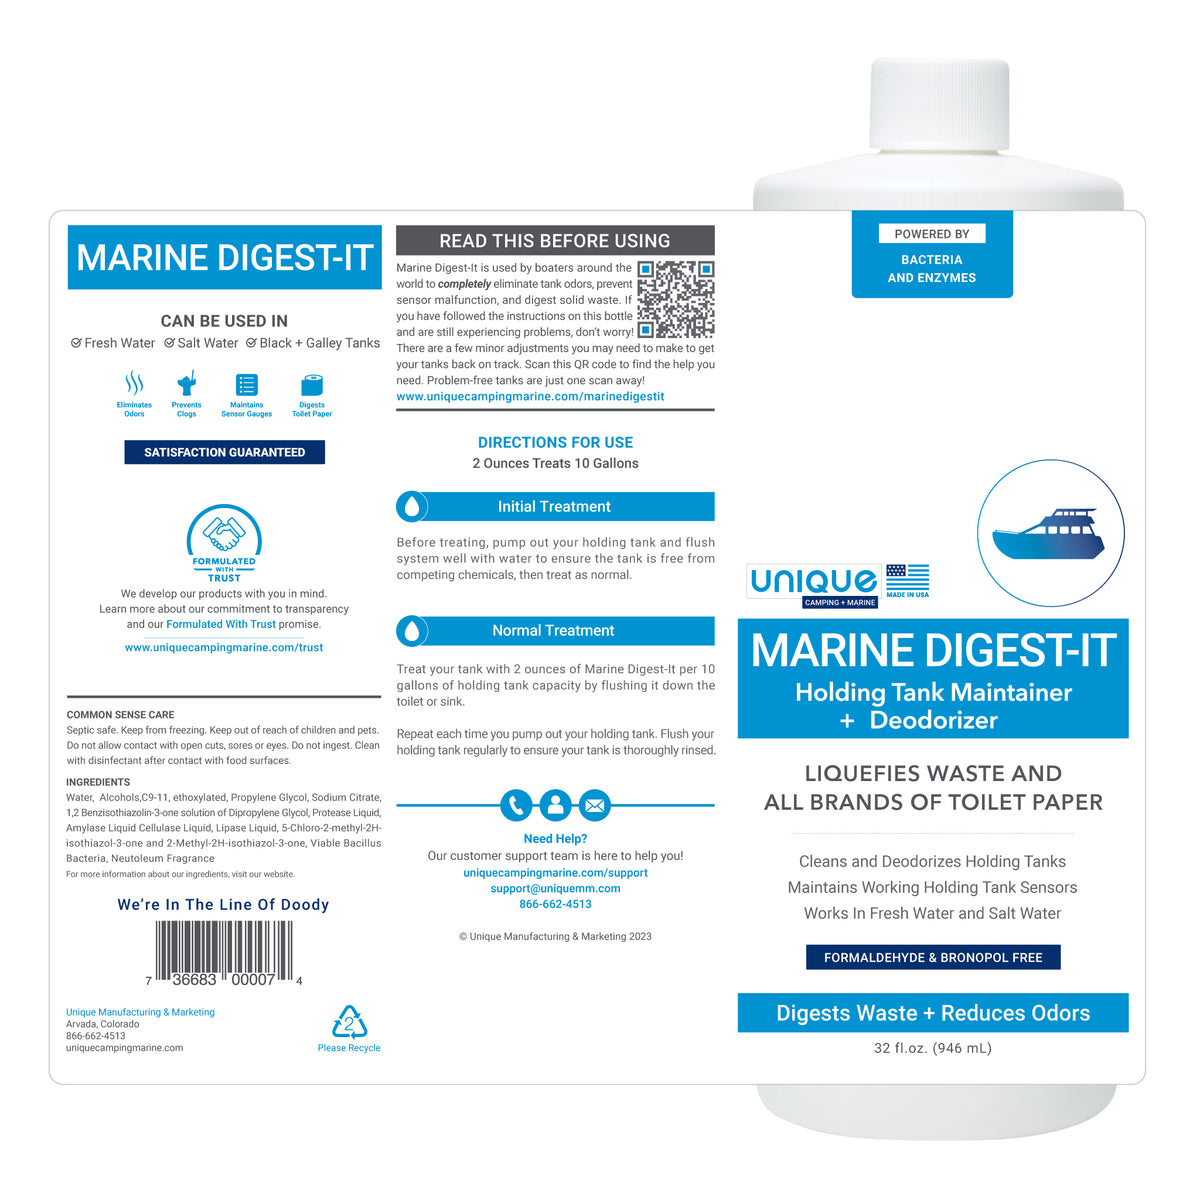 Marine Digest-It 32 oz. Boat Tank Treatment Full Label Details